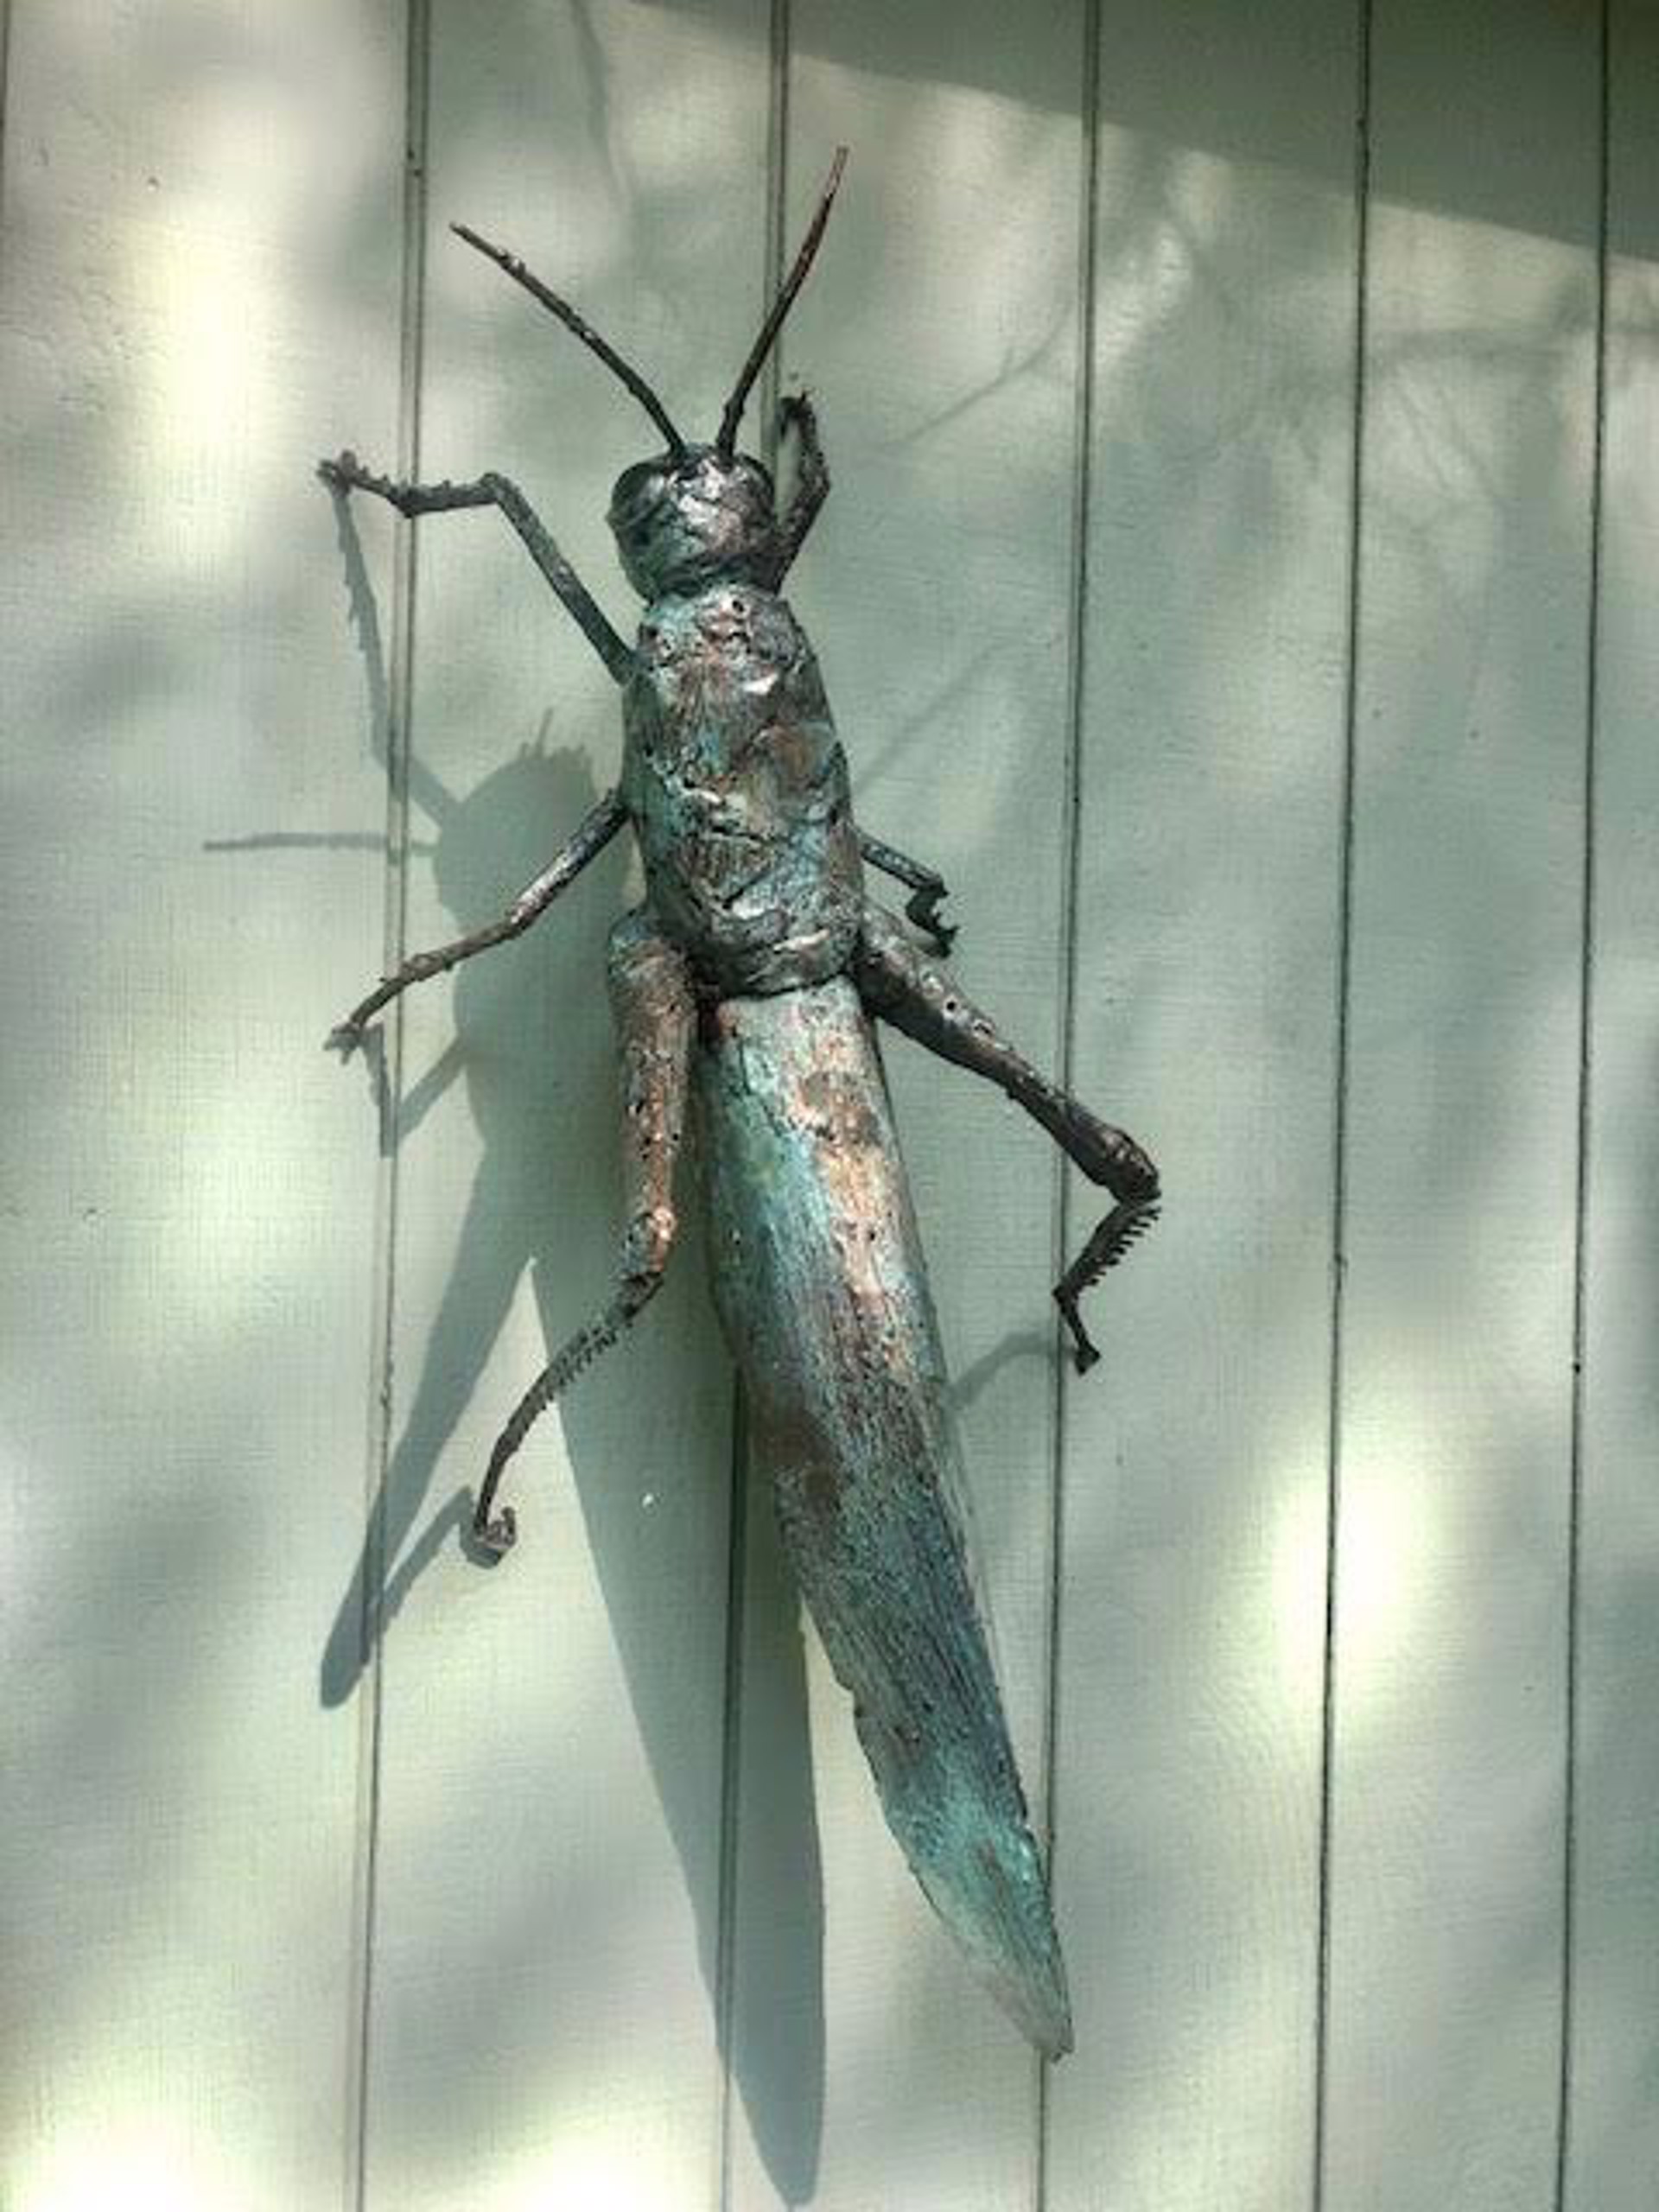 Grasshopper by William Allen